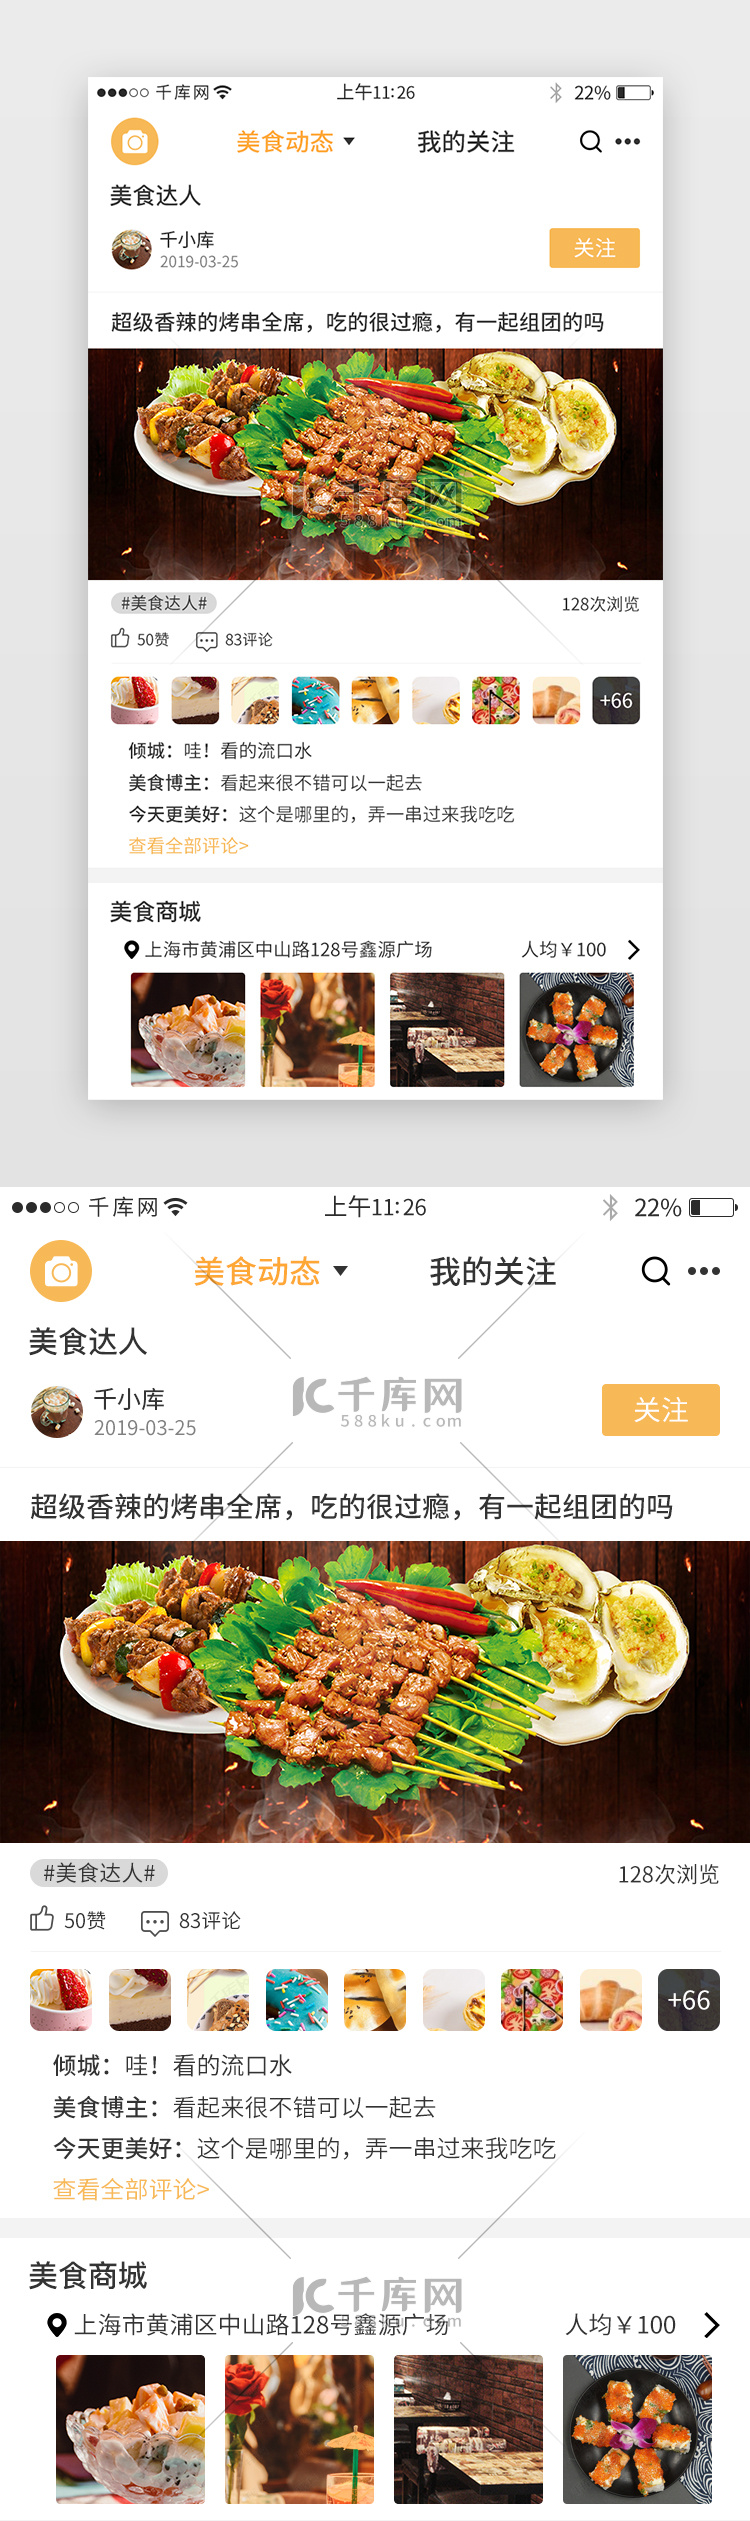 黄色系美食app界面模板设计